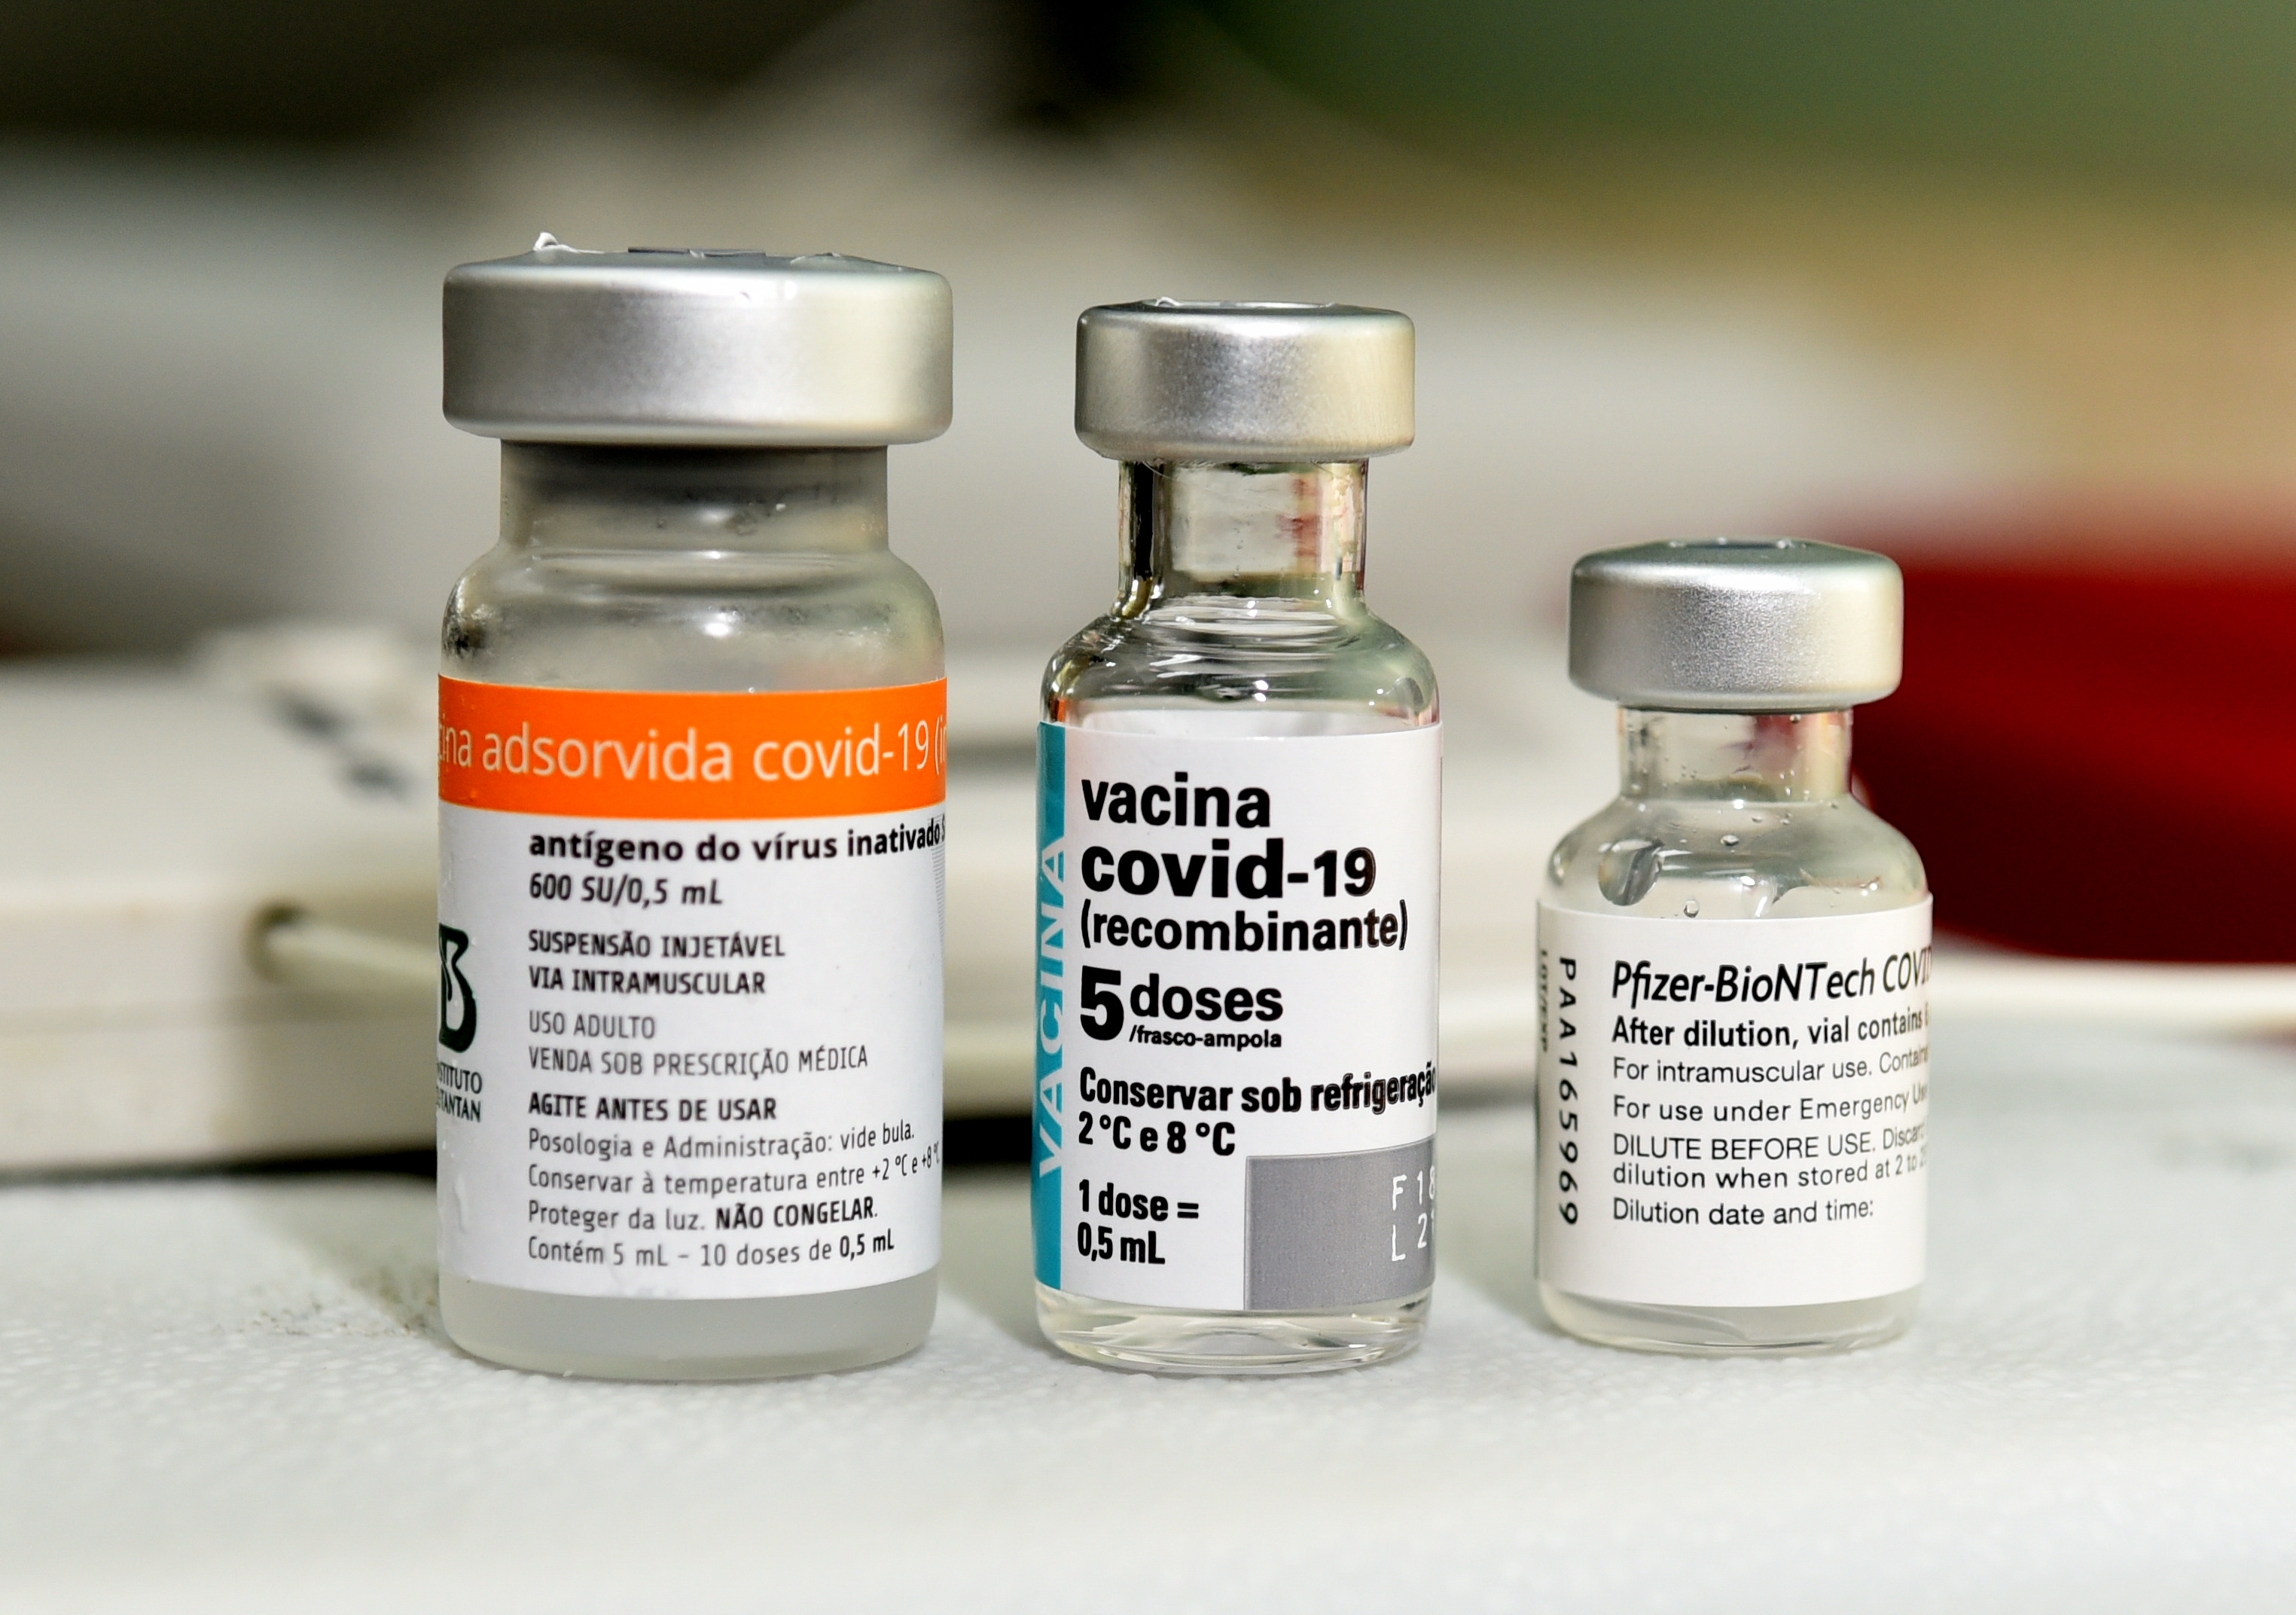 Dinâmica de troca de vacinas, na avaliação do Conass (Conselho Nacional de Secretários de Saúde), faz parte da rotina de uma campanha de vacinação e não há orientações impeditivas ao remanejo